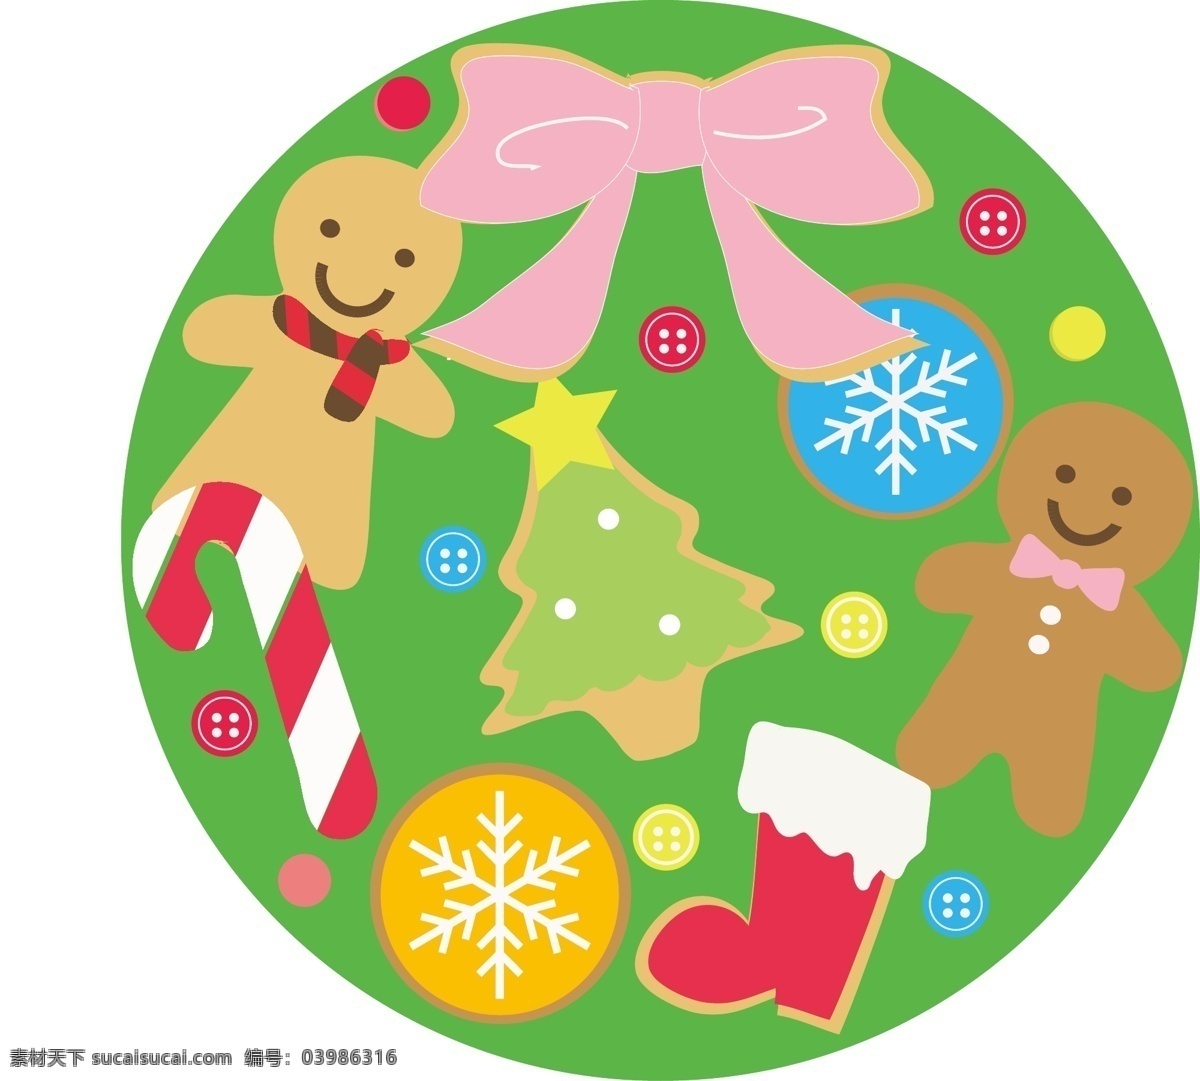 圣诞 糖果 饼干 节日 节日素材 圣诞节 圣诞糖果 圆形 矢量 模板下载 其他节日